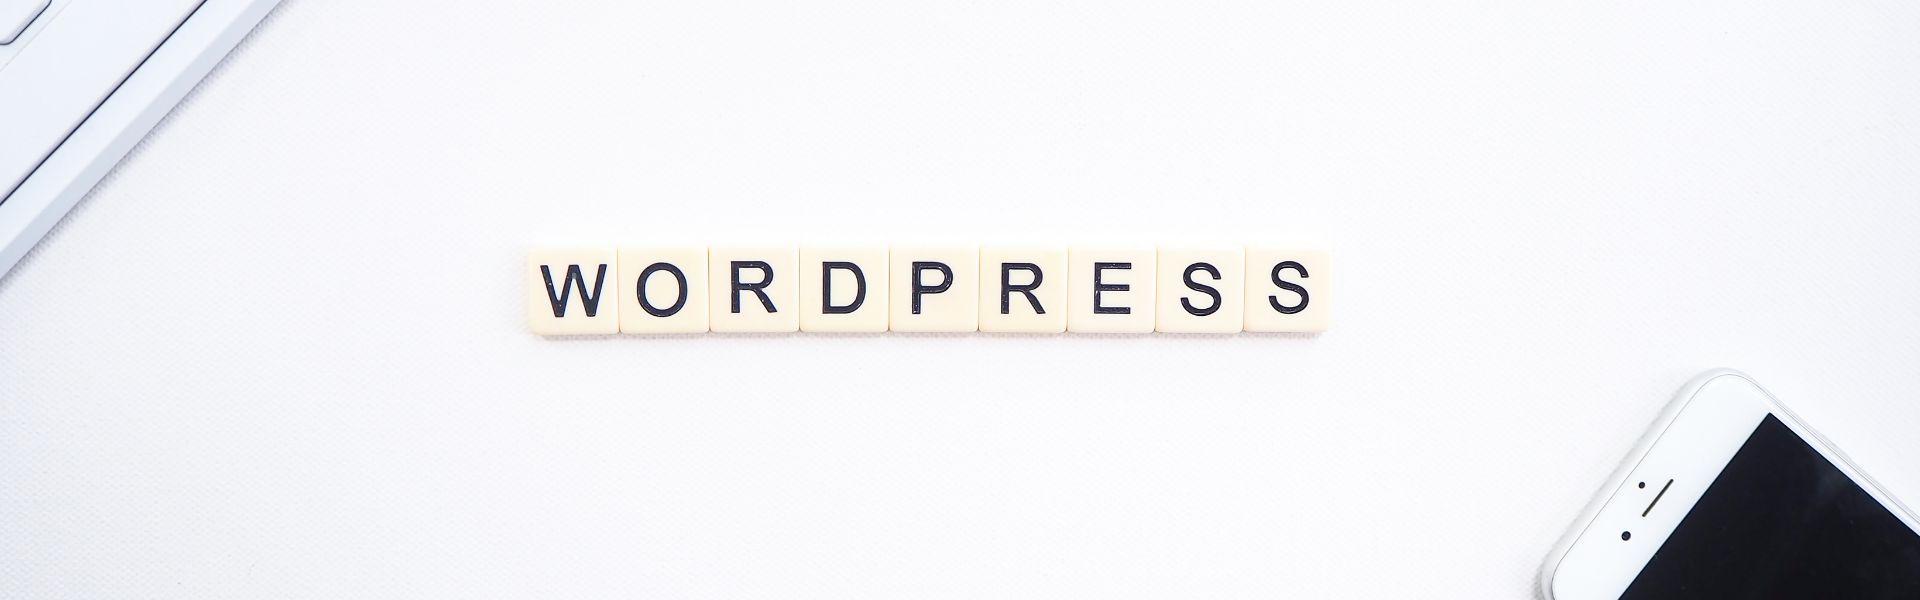 wordpress, woocommerce, nettside bedrift, webutvikling, webanalyse, digital rådigving